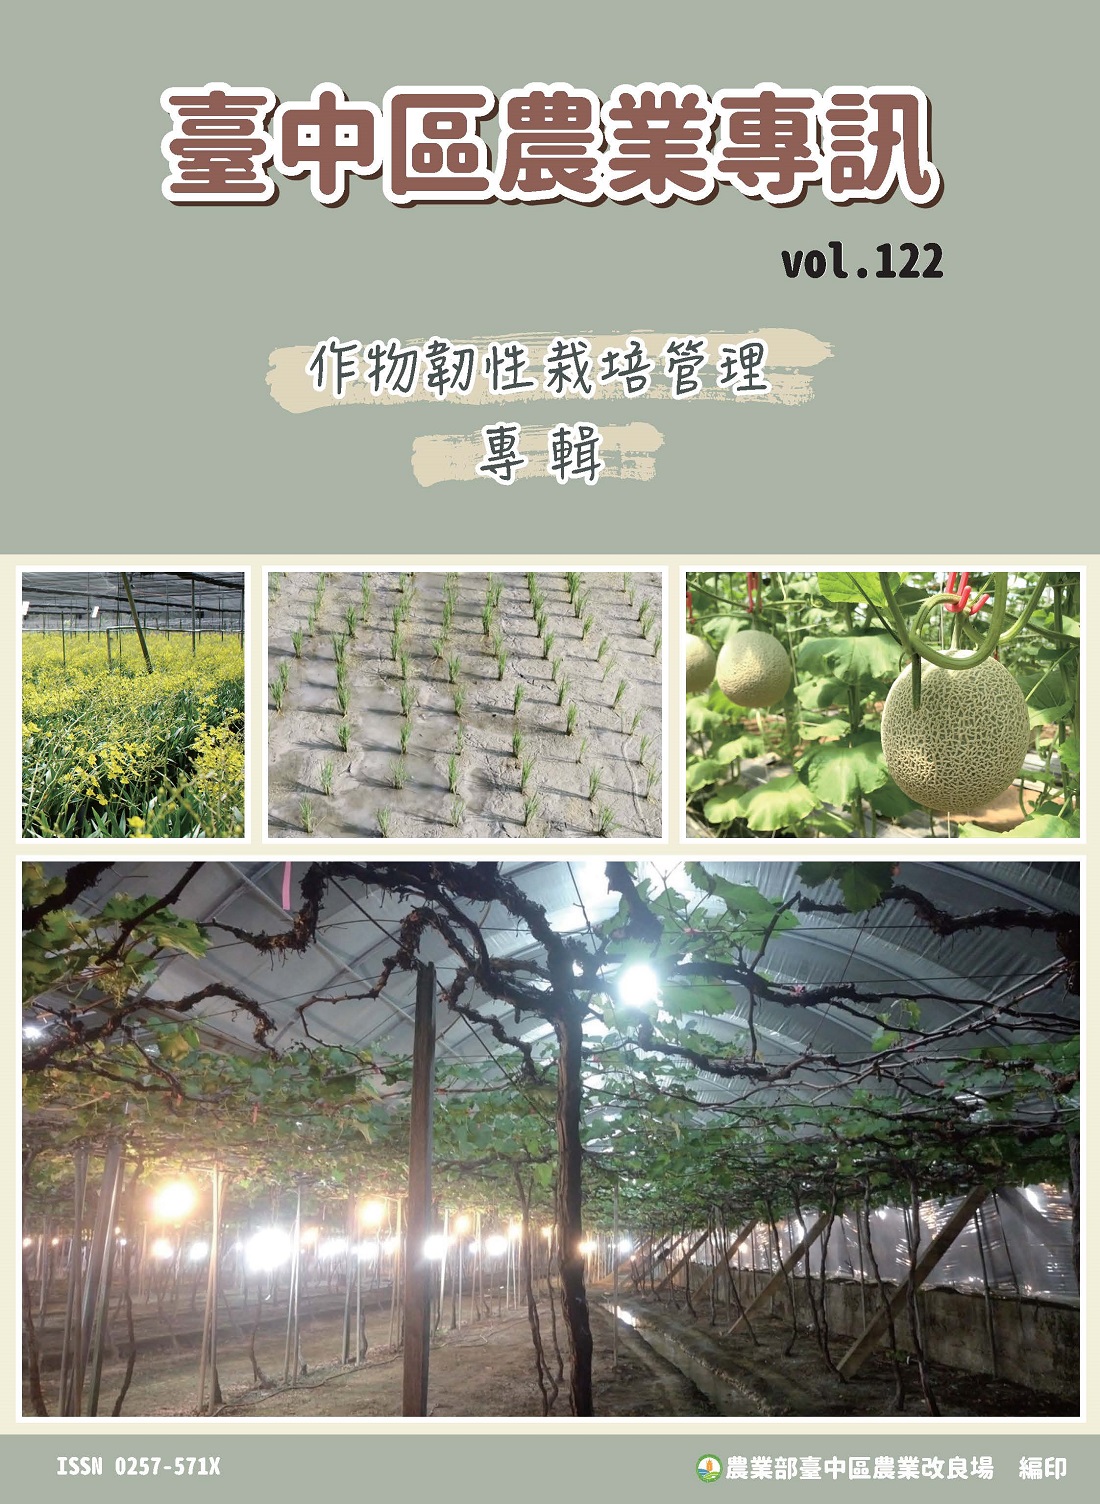 臺中區農業專訊第122期(112年9月)-作物韌性栽培管理專輯